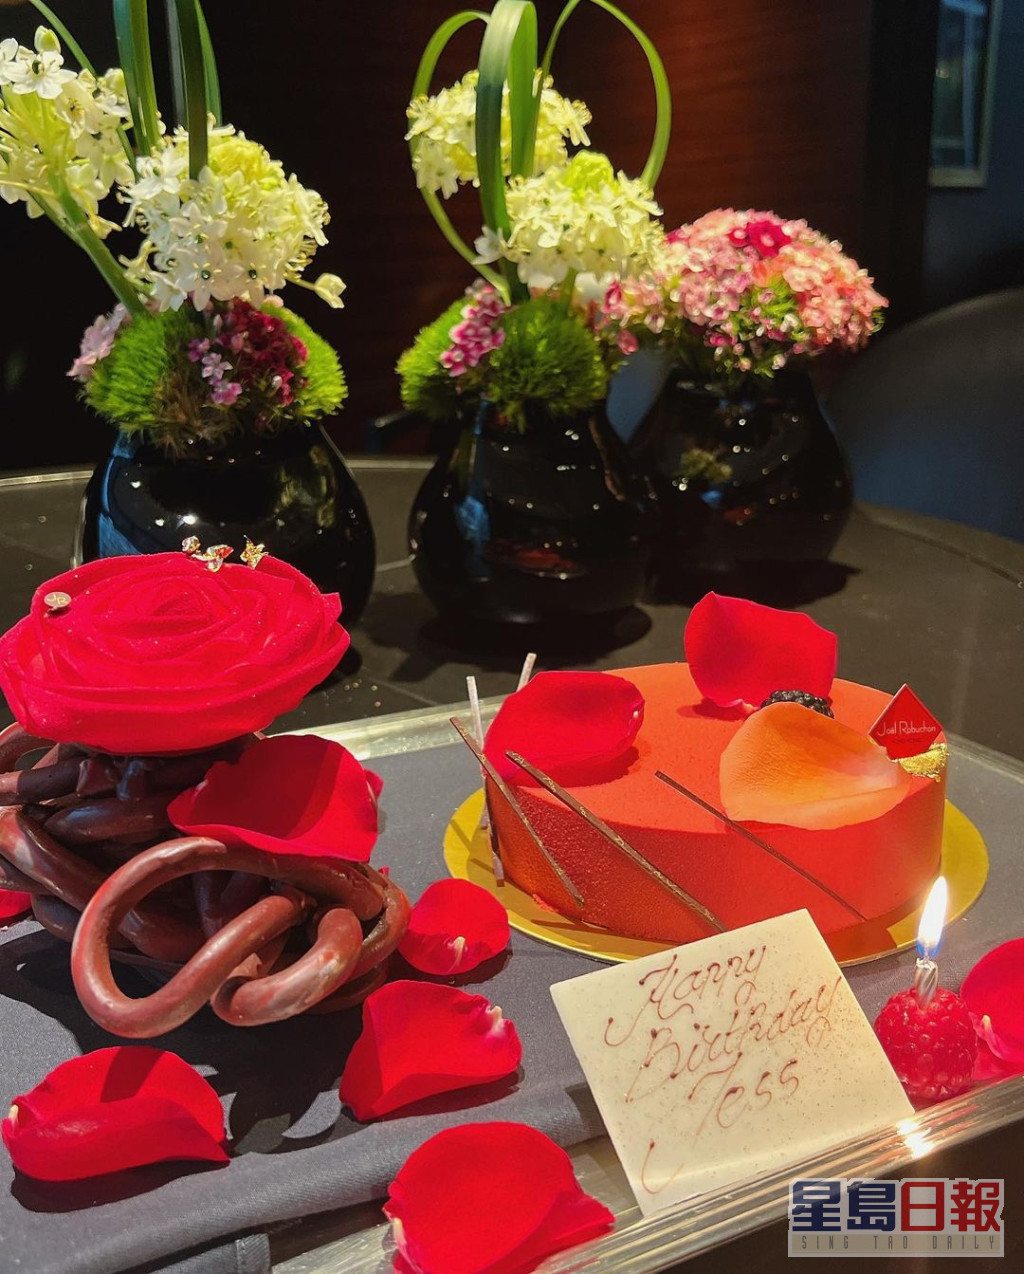 沈卓盈生日获赠布满玫瑰花瓣的红色蛋糕。